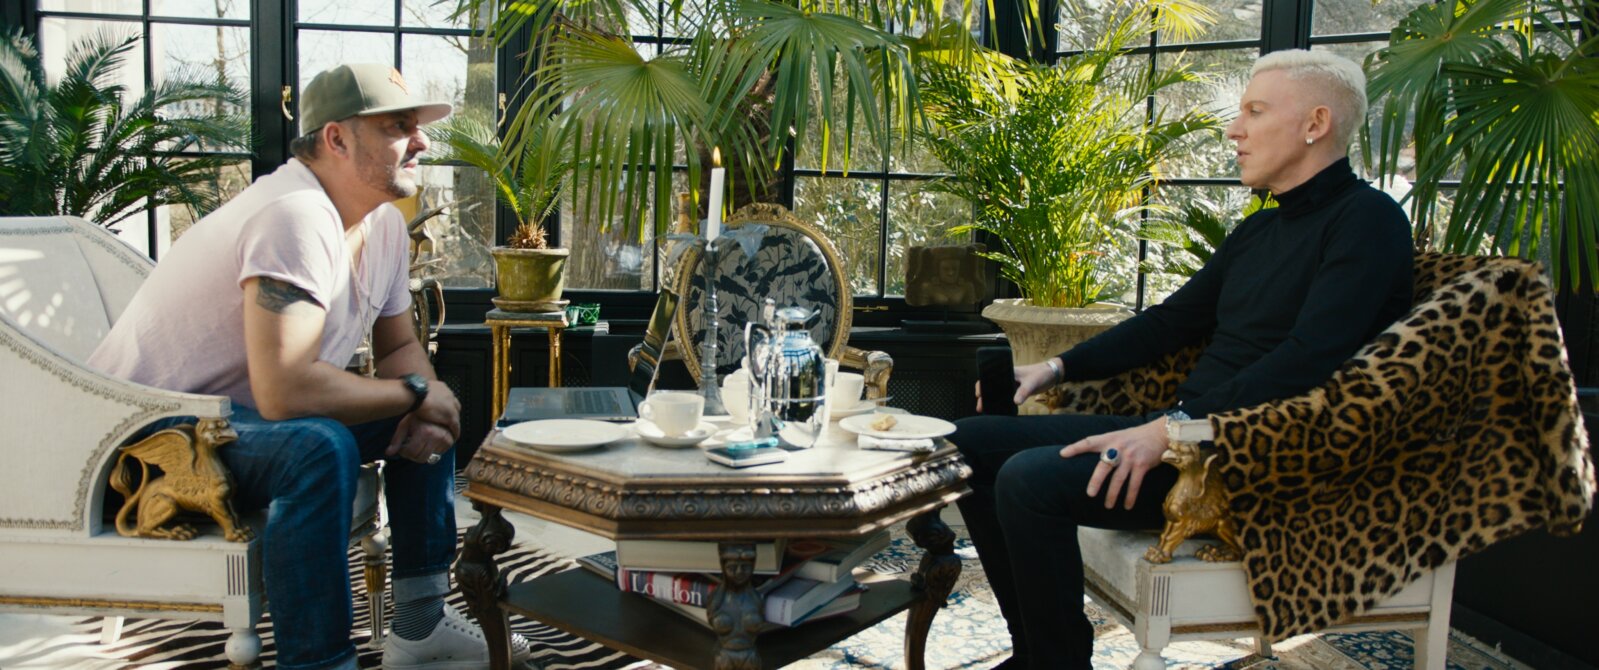 Aus der Doku FCK 2020: Kaffee oder Tee? H. P. Baxxter und sein Booker George Angelopoulos diskutieren im Wintergarten. (© avanti media fiction)